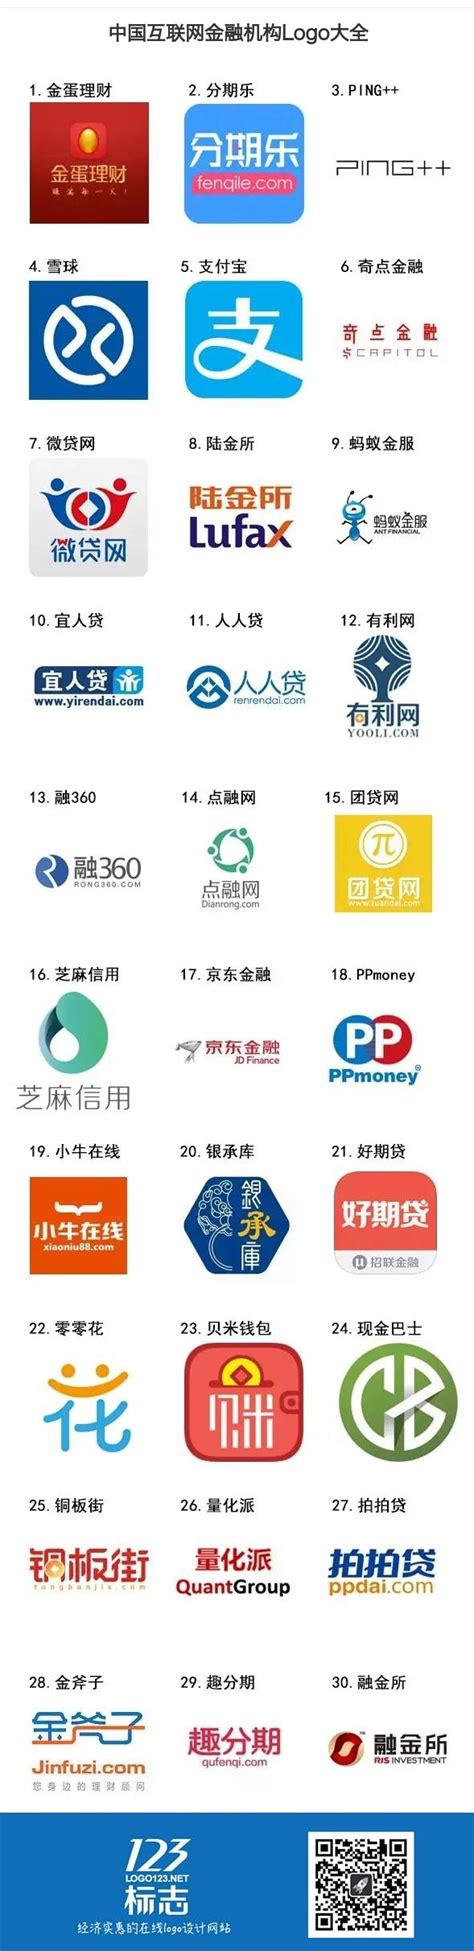 中国互联网金融协会首次公开招聘 拟校招30人-零壹财经